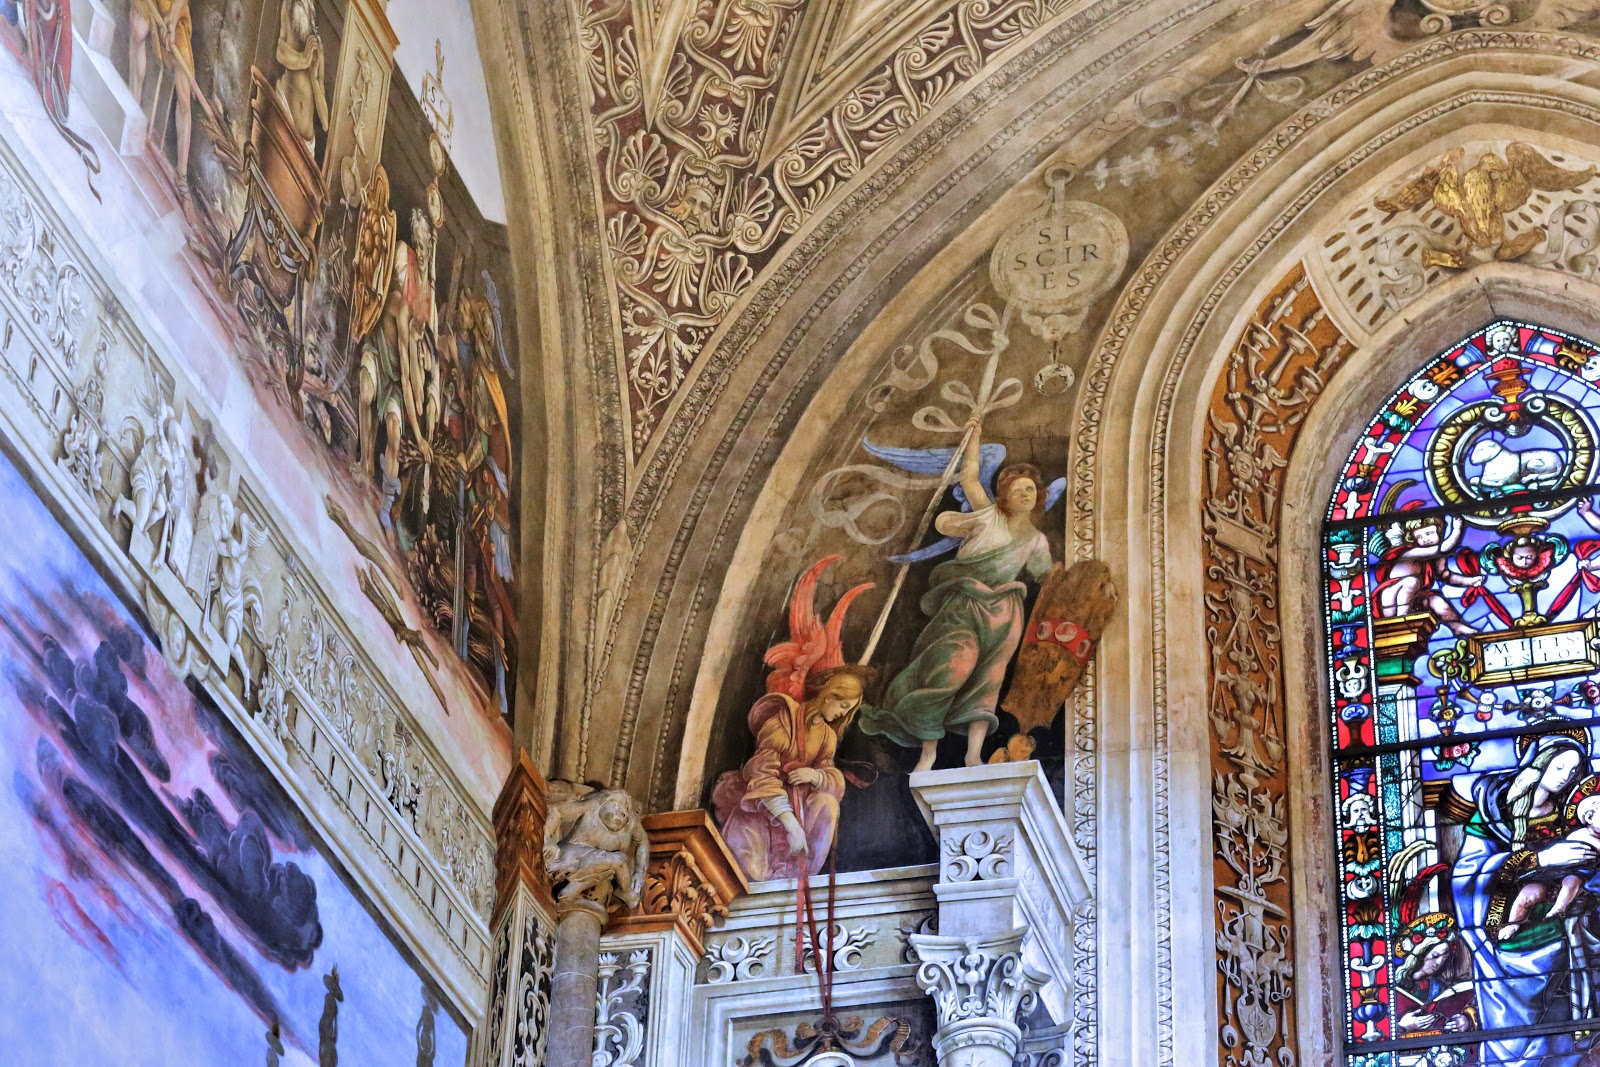 Filippino+Lippi-1457-1504 (24).jpg